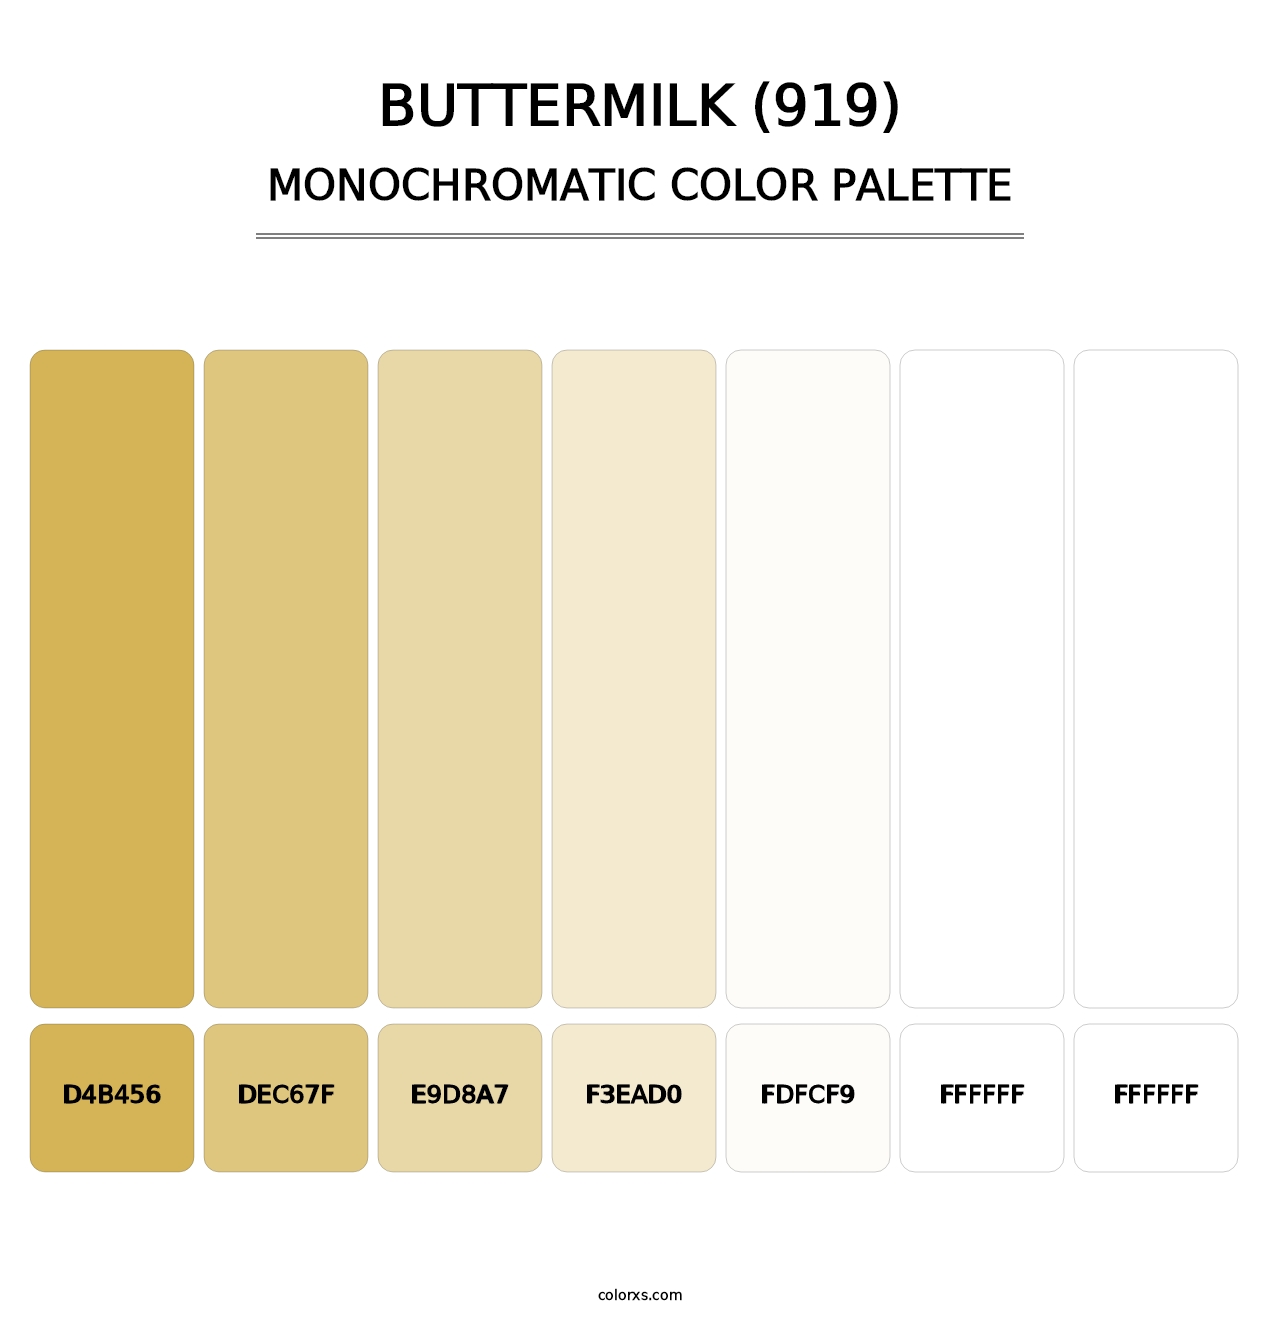 Buttermilk (919) - Monochromatic Color Palette